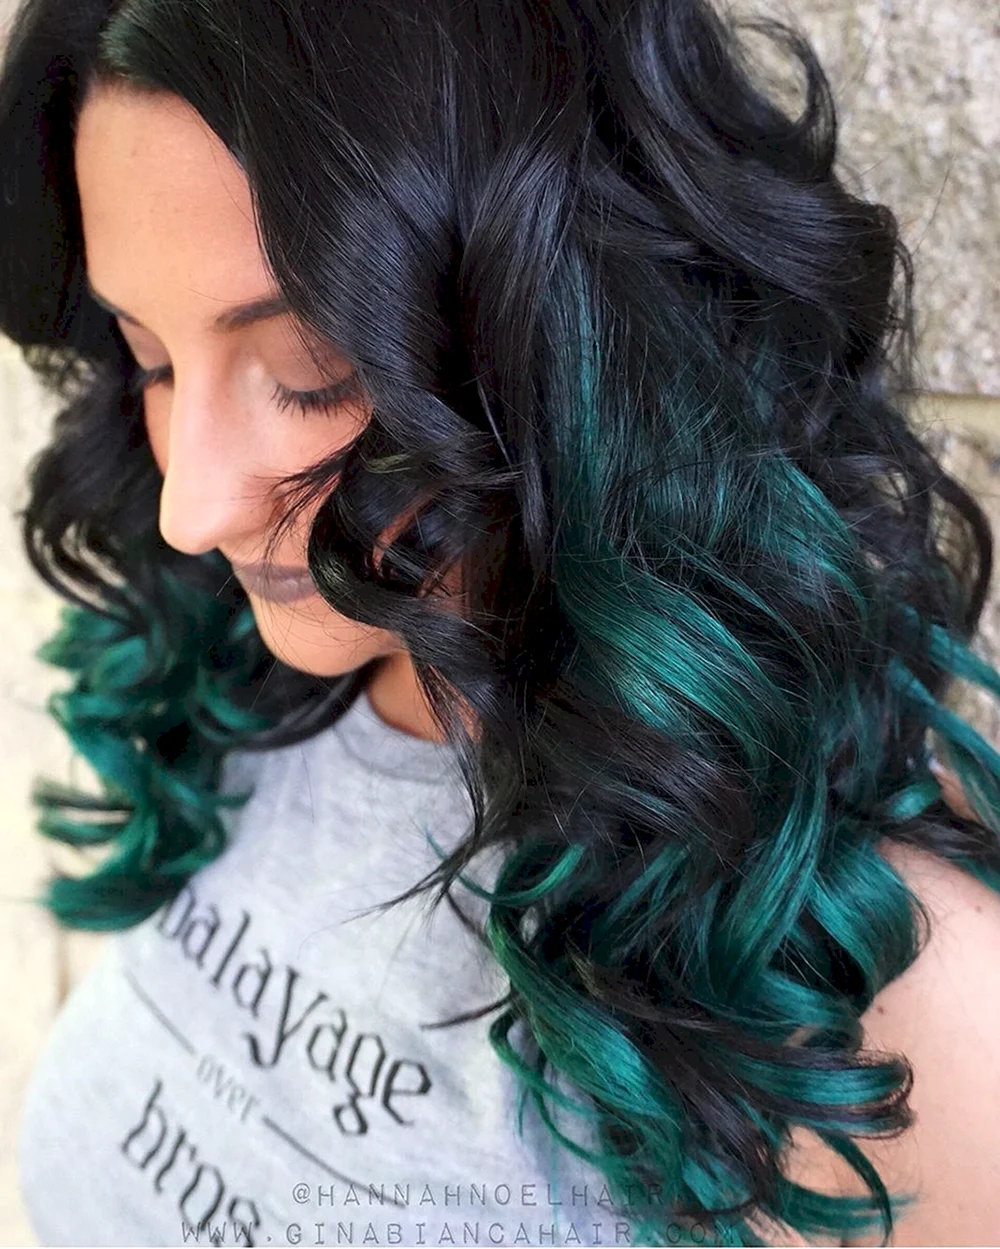 Emerald hair